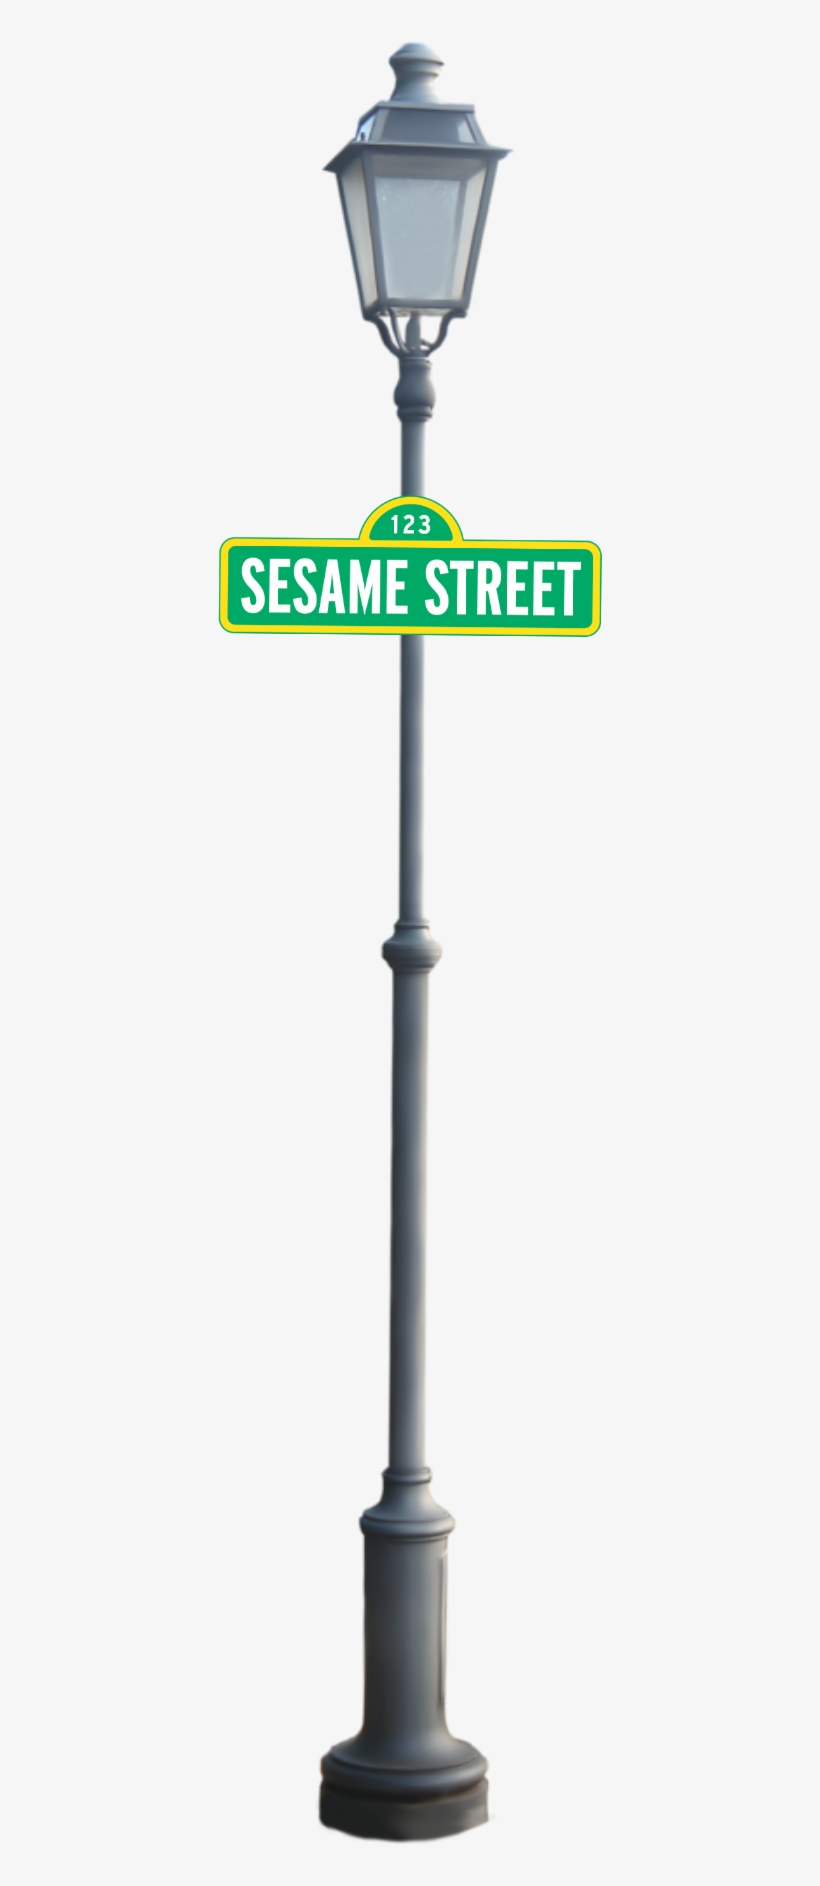 Sesame Street Light Pole Png - Sesame Street, transparent png #958261